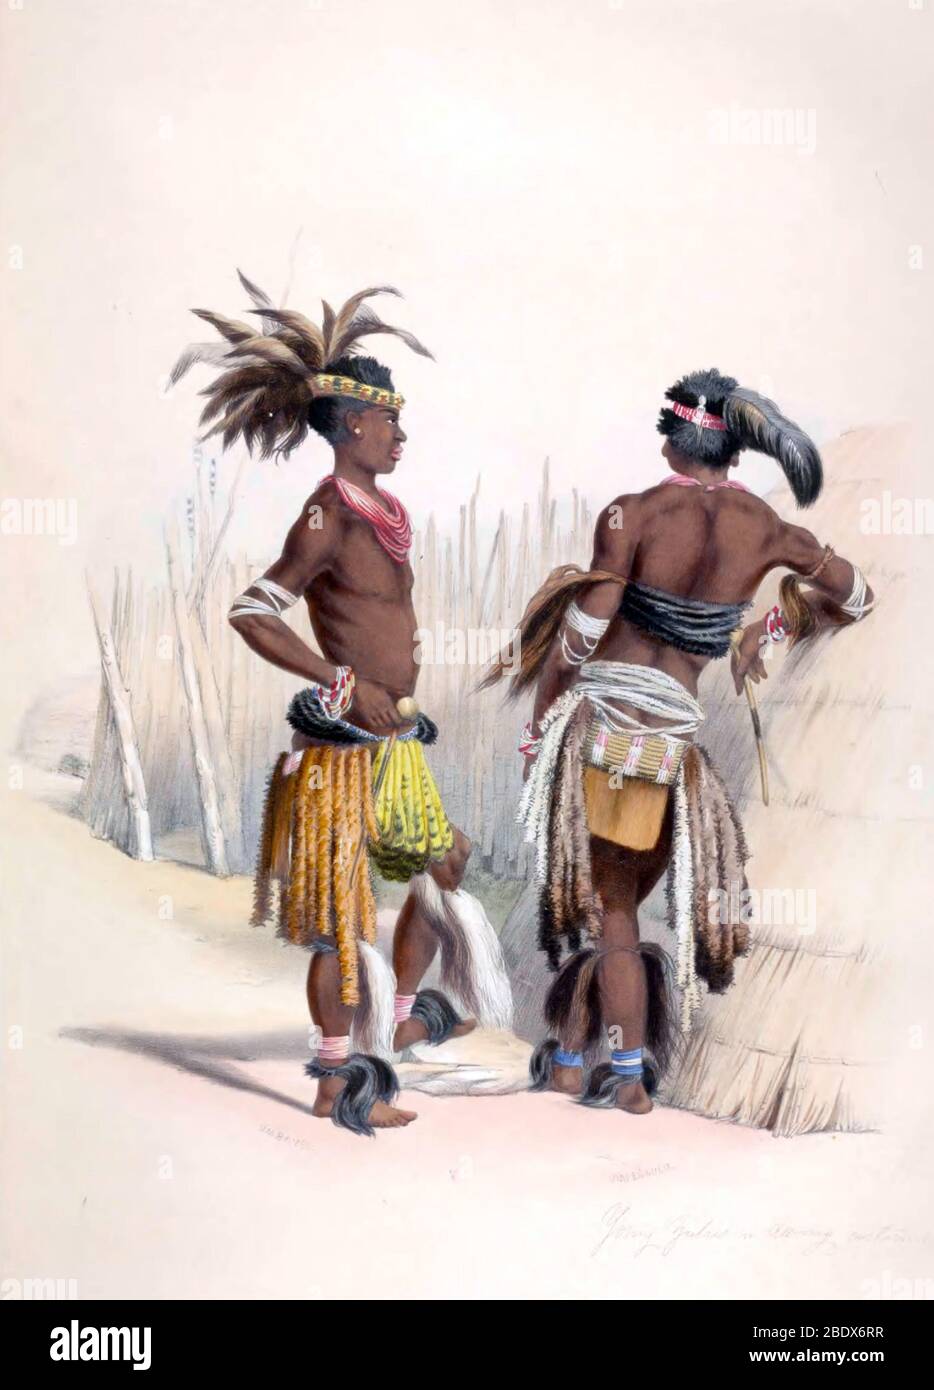 Afrique du Sud, costumes de danse Zulu Warriors, 1840 Banque D'Images